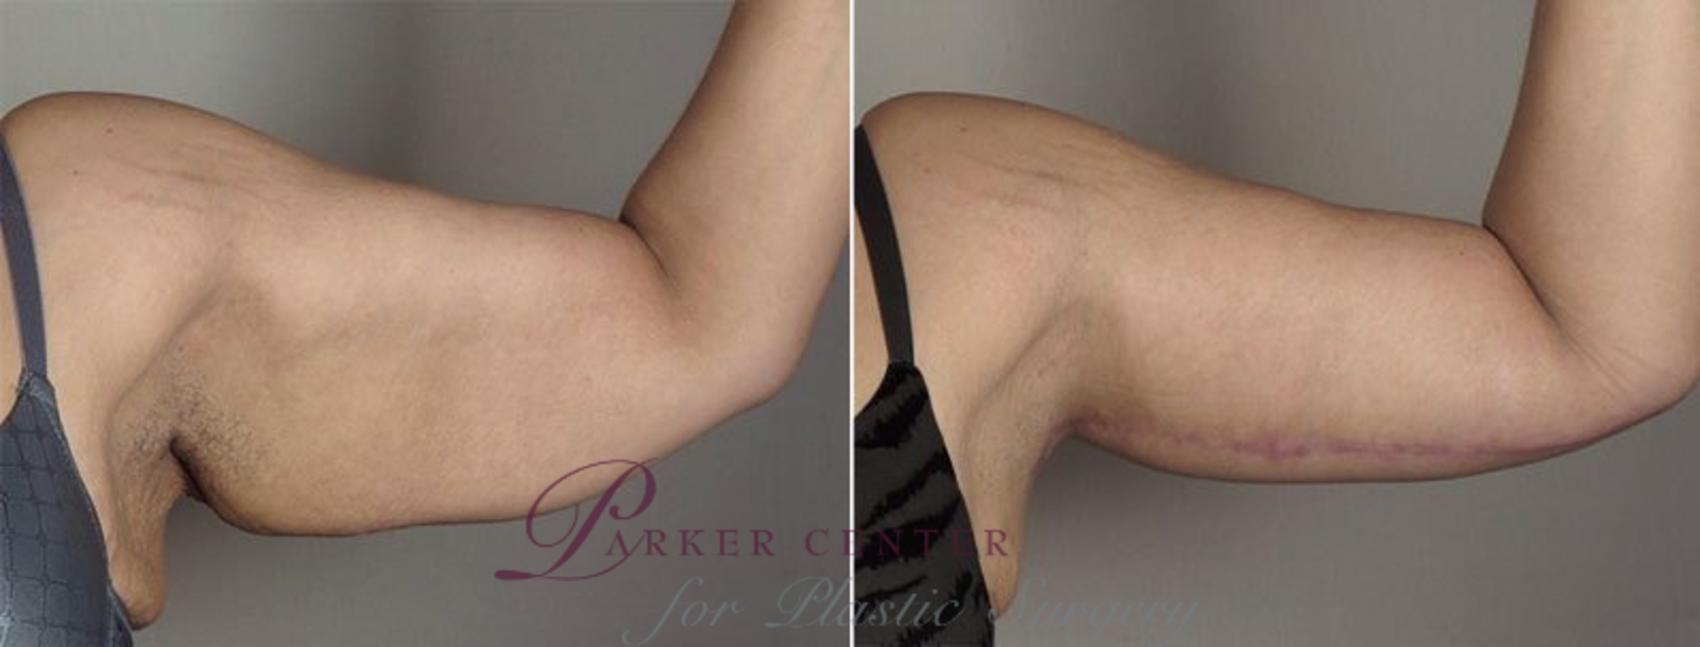 Upper Arm Rejuvenation Case 830 Before & After View #2 | Paramus, NJ | Parker Center for Plastic Surgery